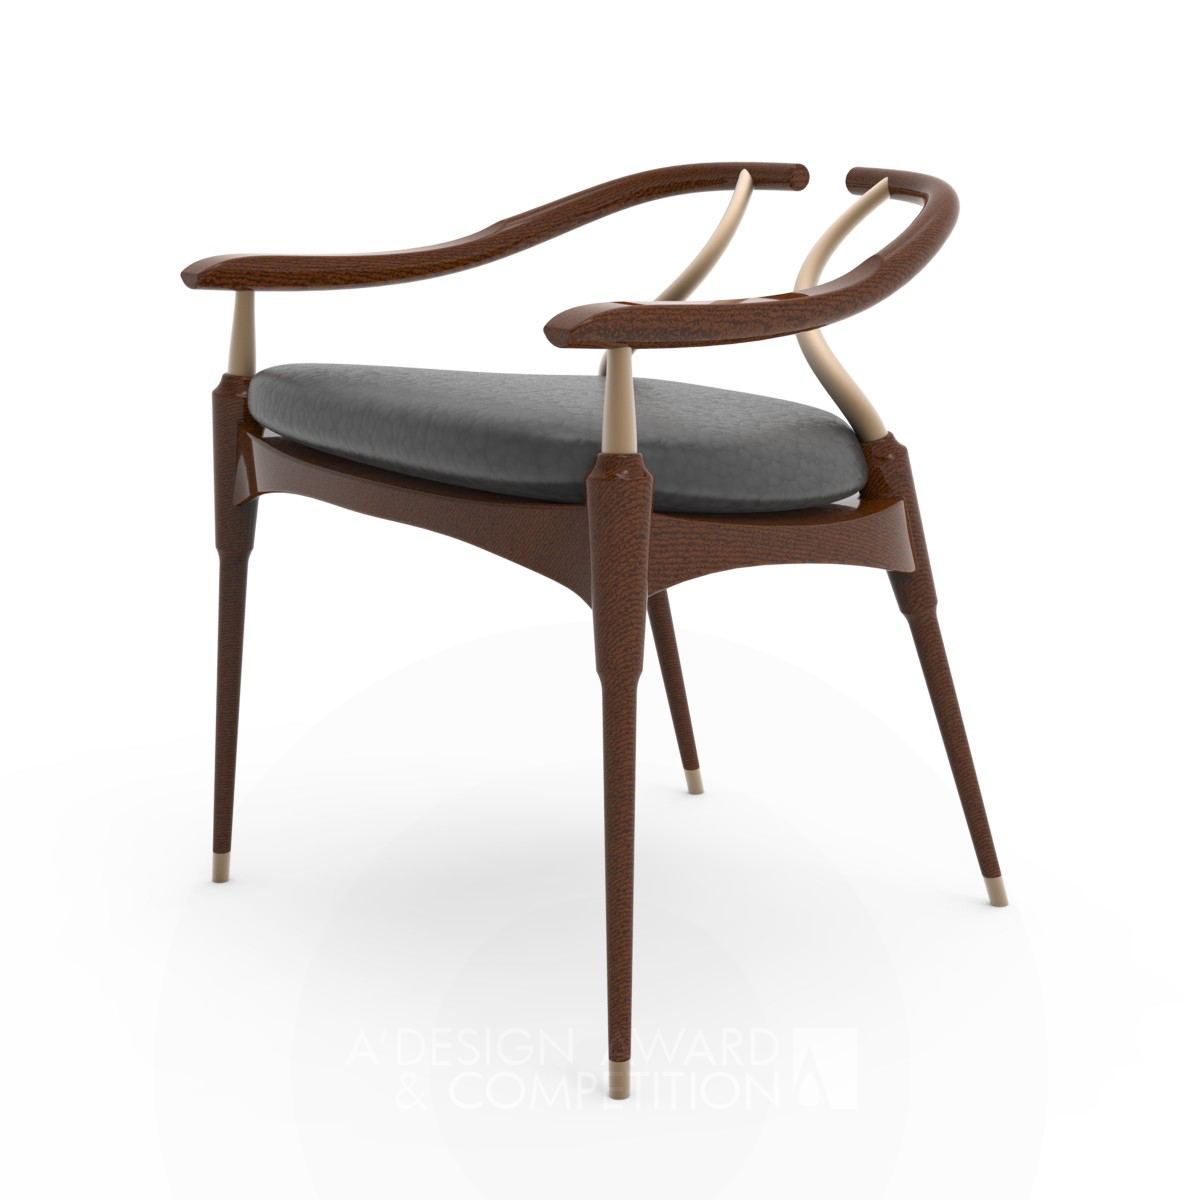 Placid Chair by Wei Jingye, Zhang Ruiqi and Li Gangchi Bronze Furniture Design Award Winner 2019 